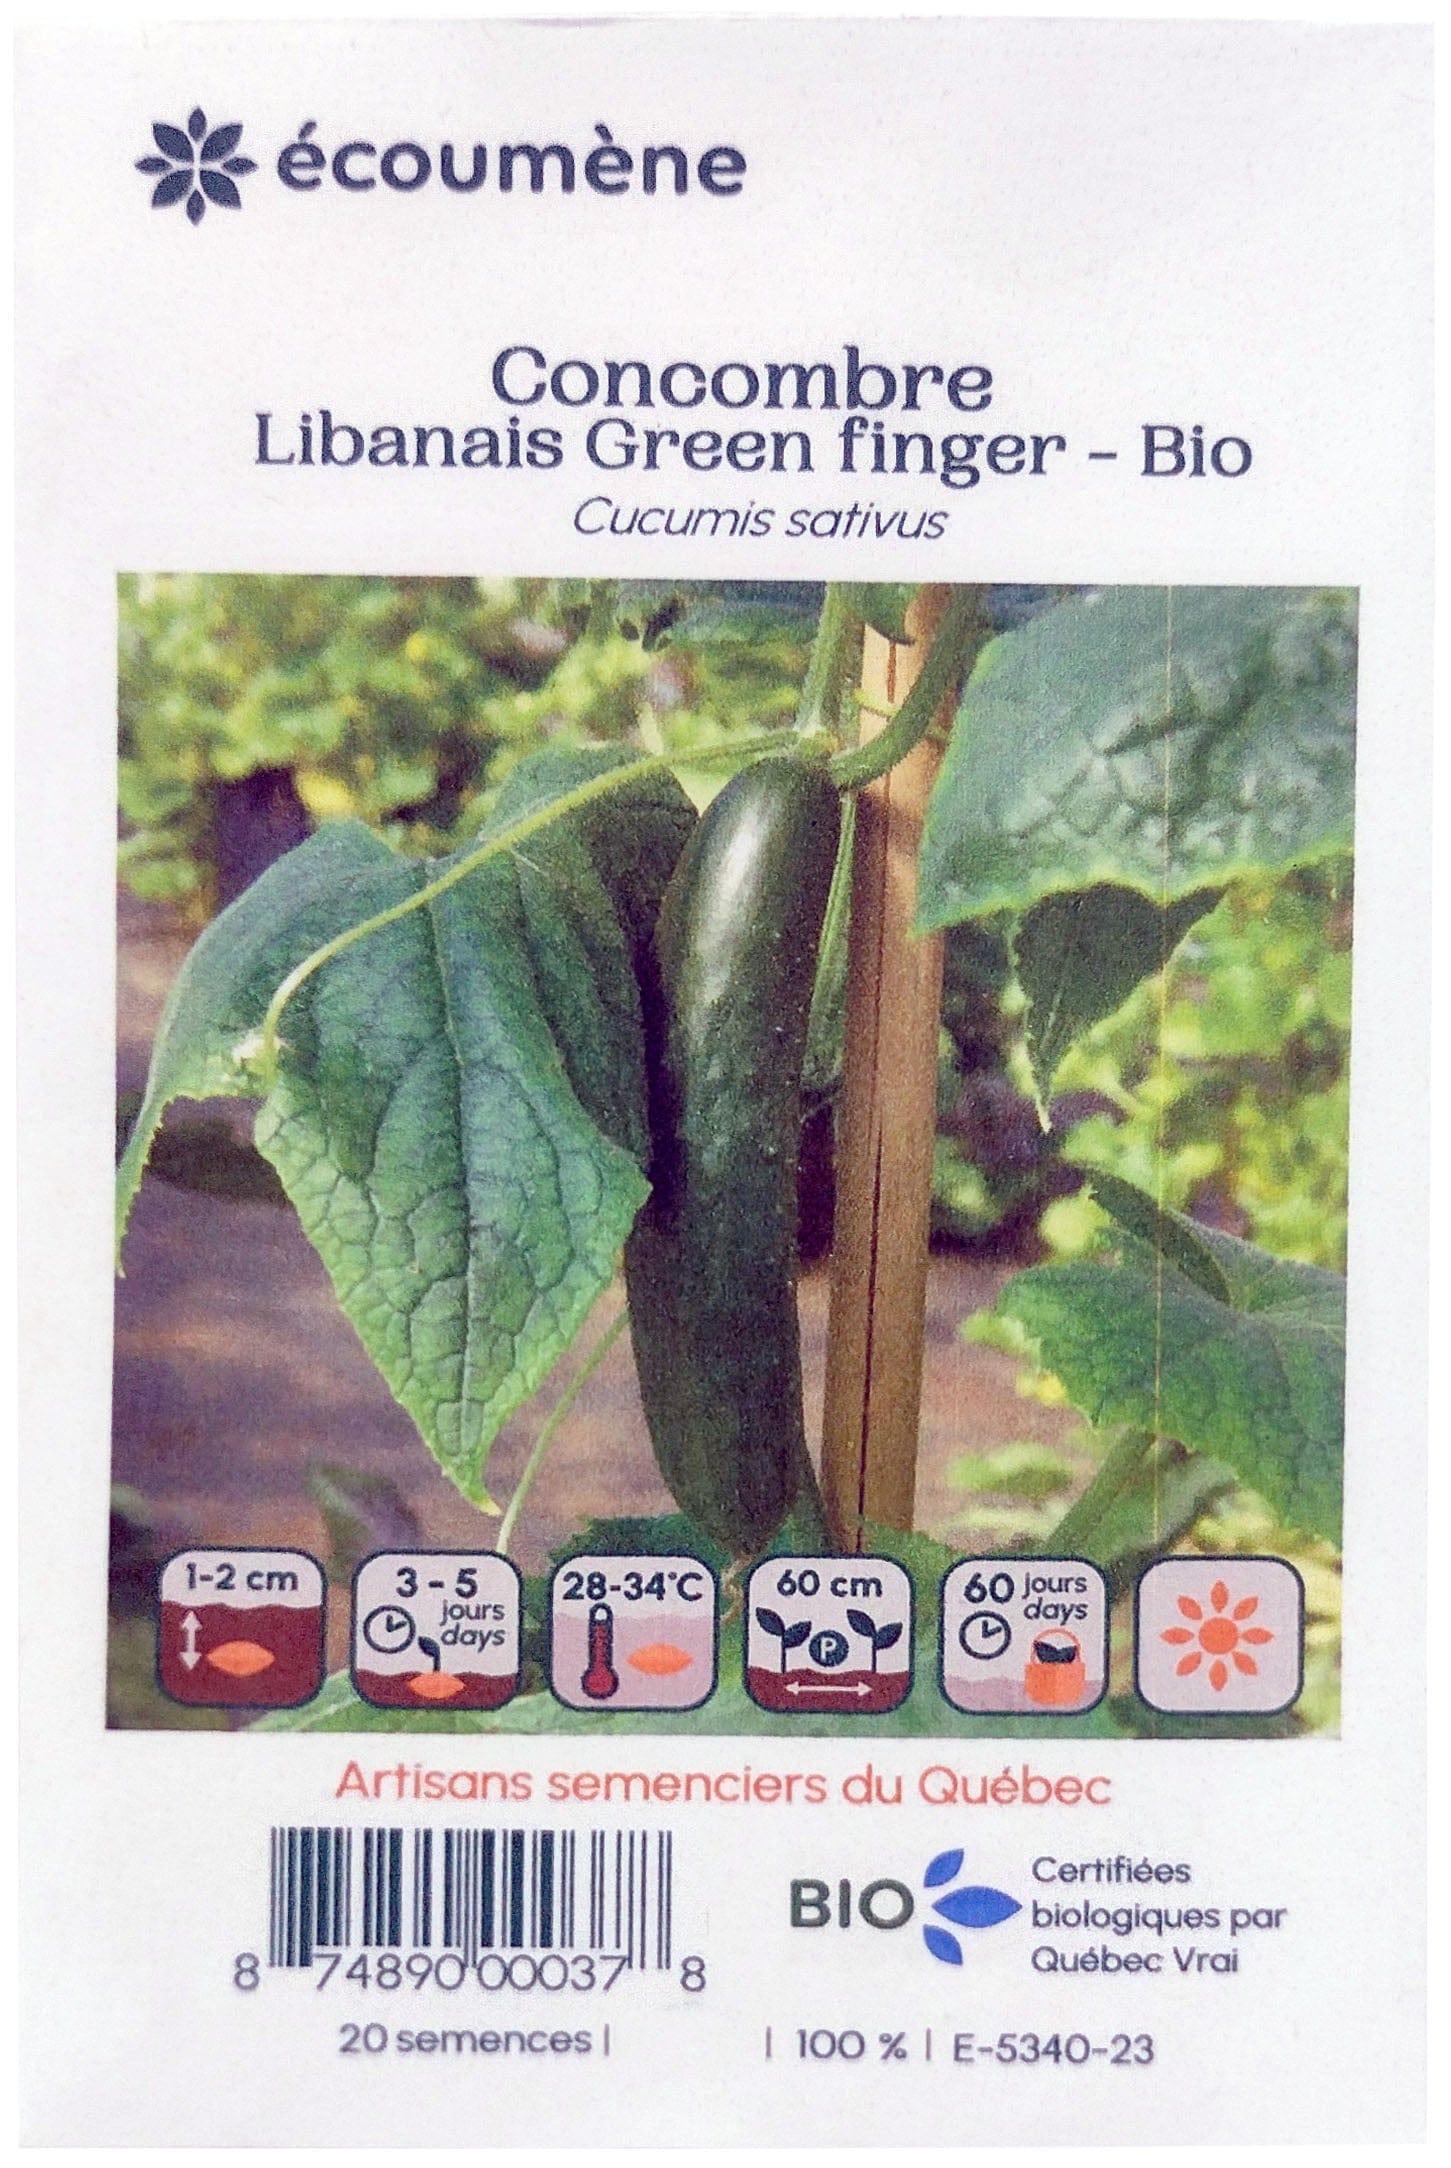 JARDINS DE L'ÉCOUMÈNE Épicerie Semence concombre libanais green finger bio (un)